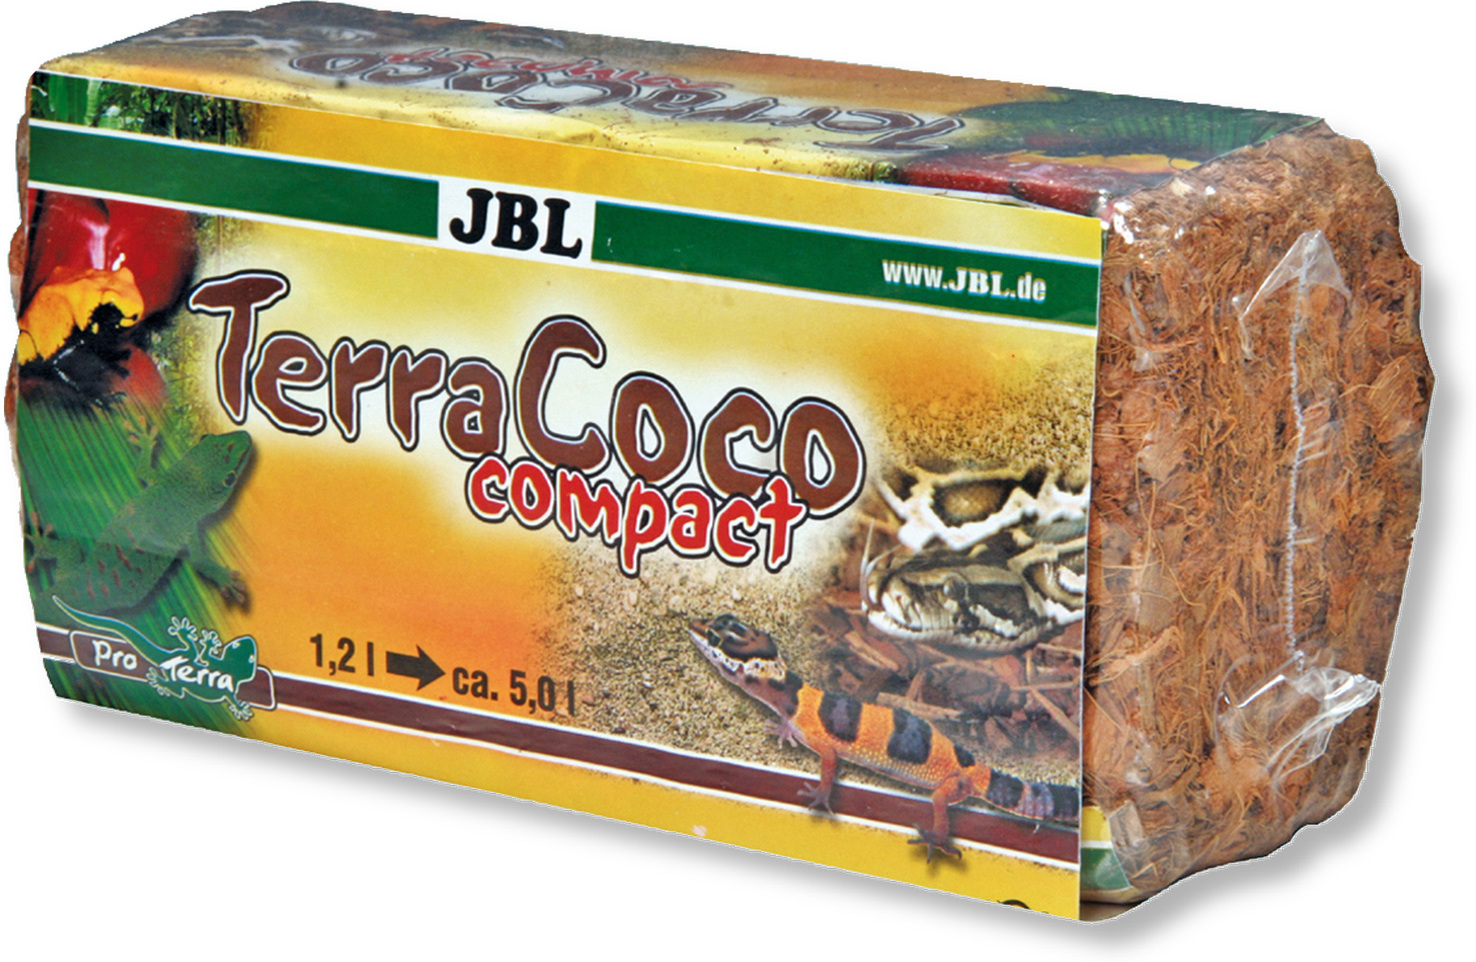 JBL TerraCoco Compact substrat – 450 g (5 l)